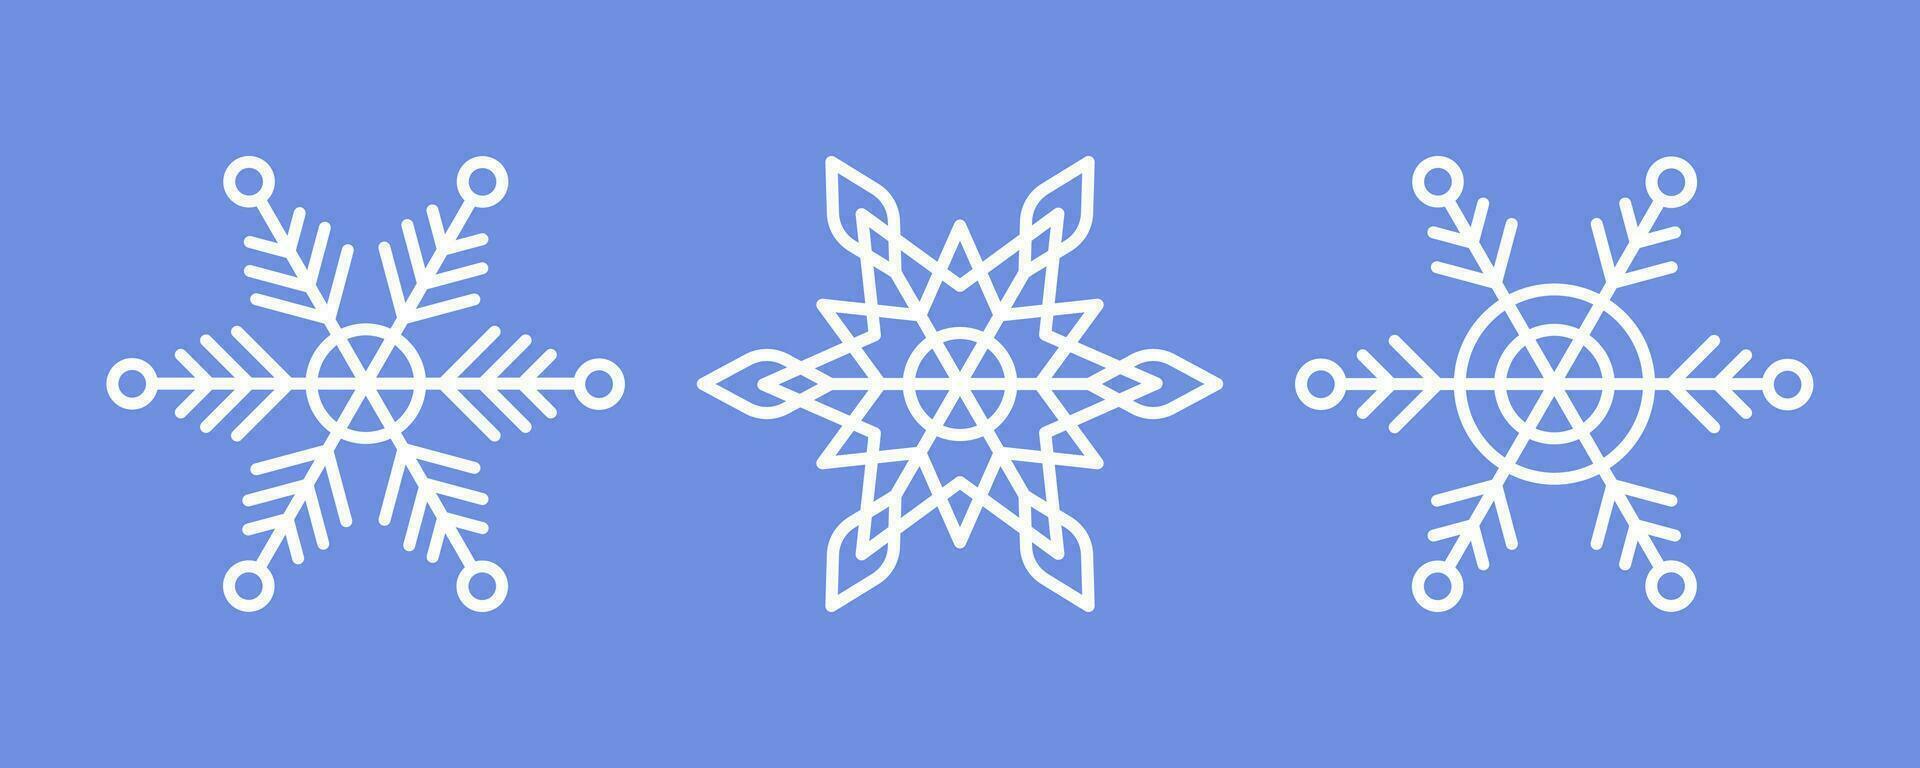 blanco copos de nieve en azul antecedentes. editable invierno aislado íconos en silueta. nieve cristales sencillo línea estilo. vector ilustración